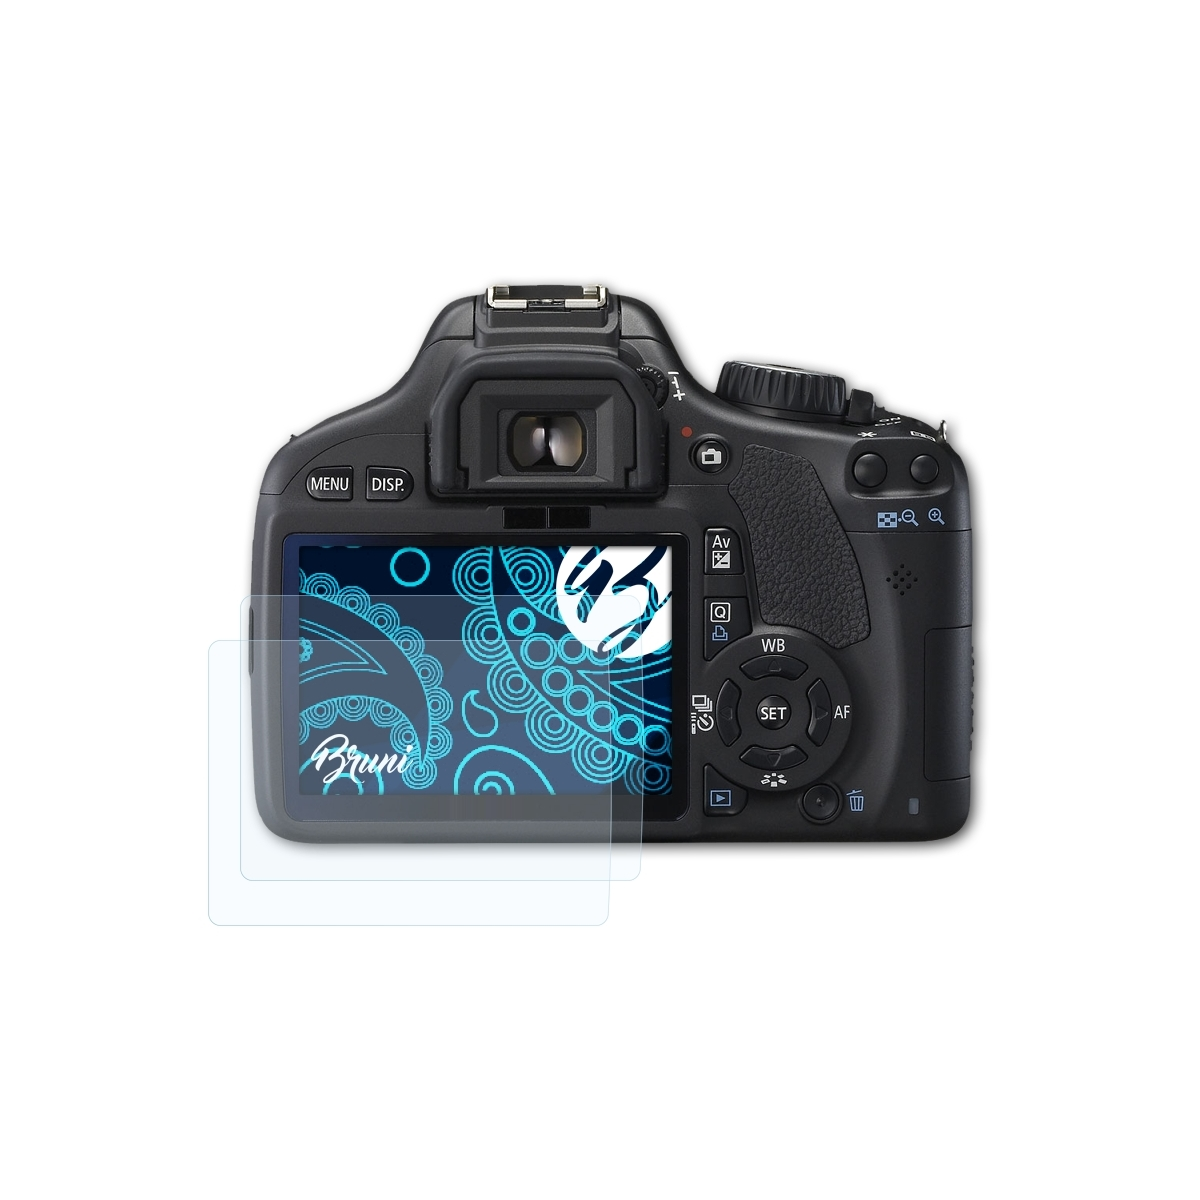 BRUNI 2x Basics-Clear Canon EOS Schutzfolie(für 550D)